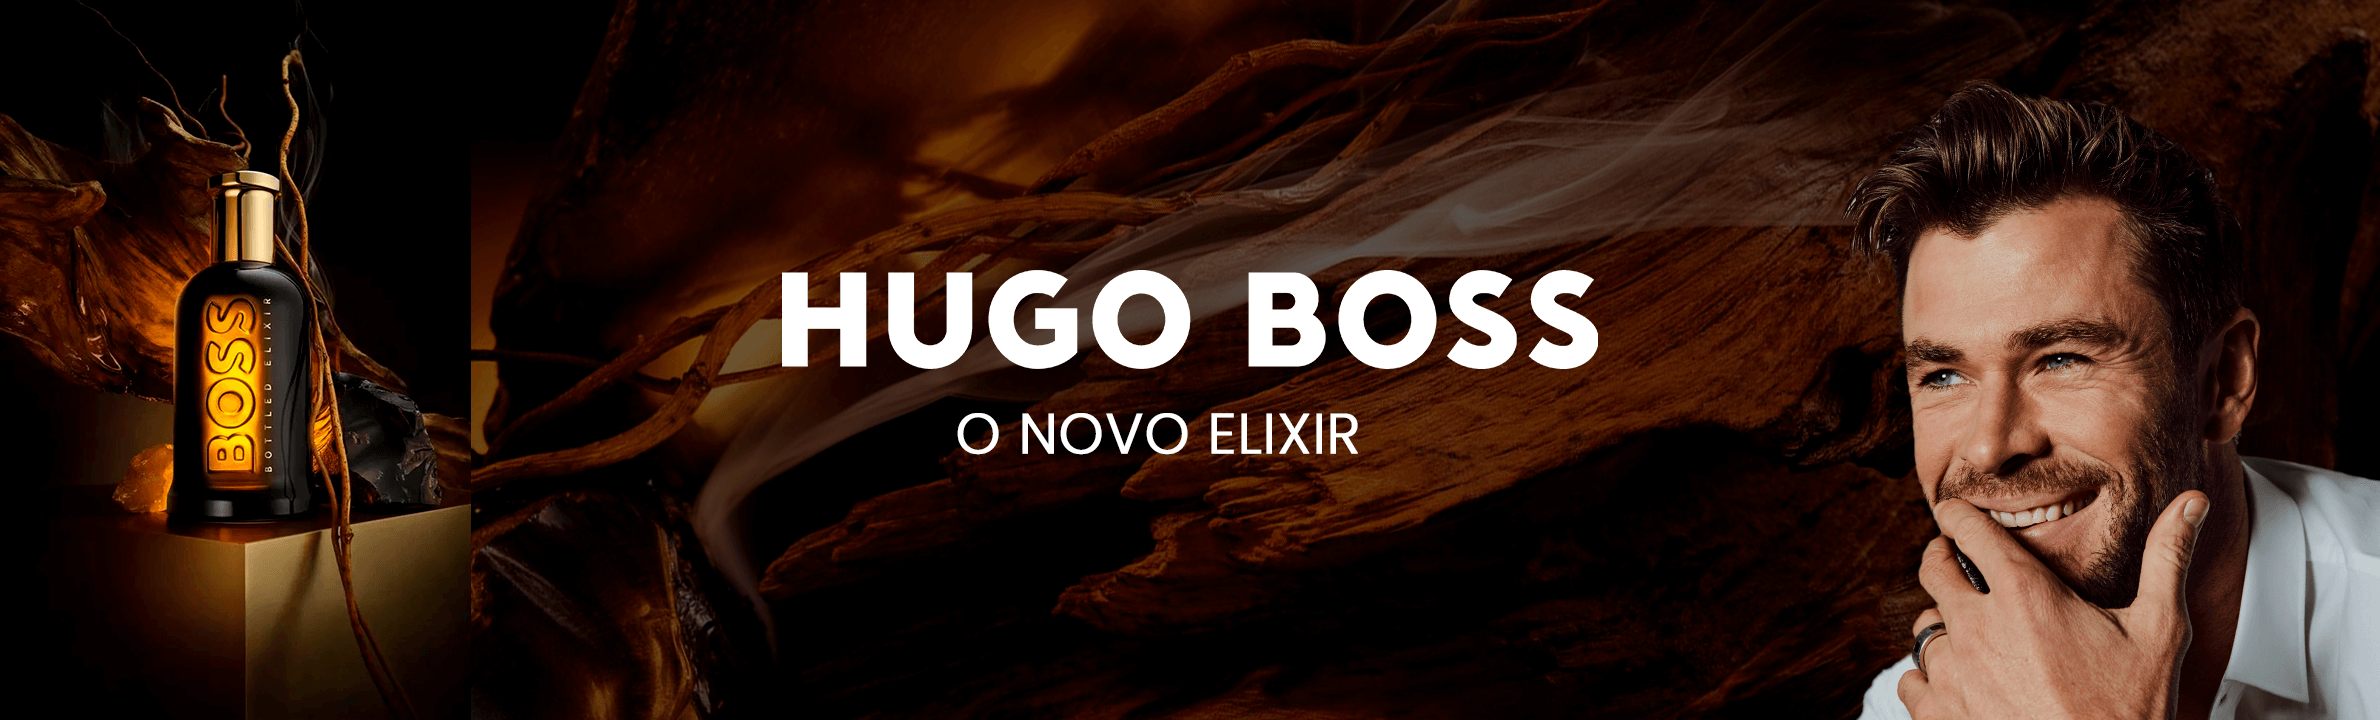 Hugo Boss Elixir Parfum | Intenso, Rico e Carismático